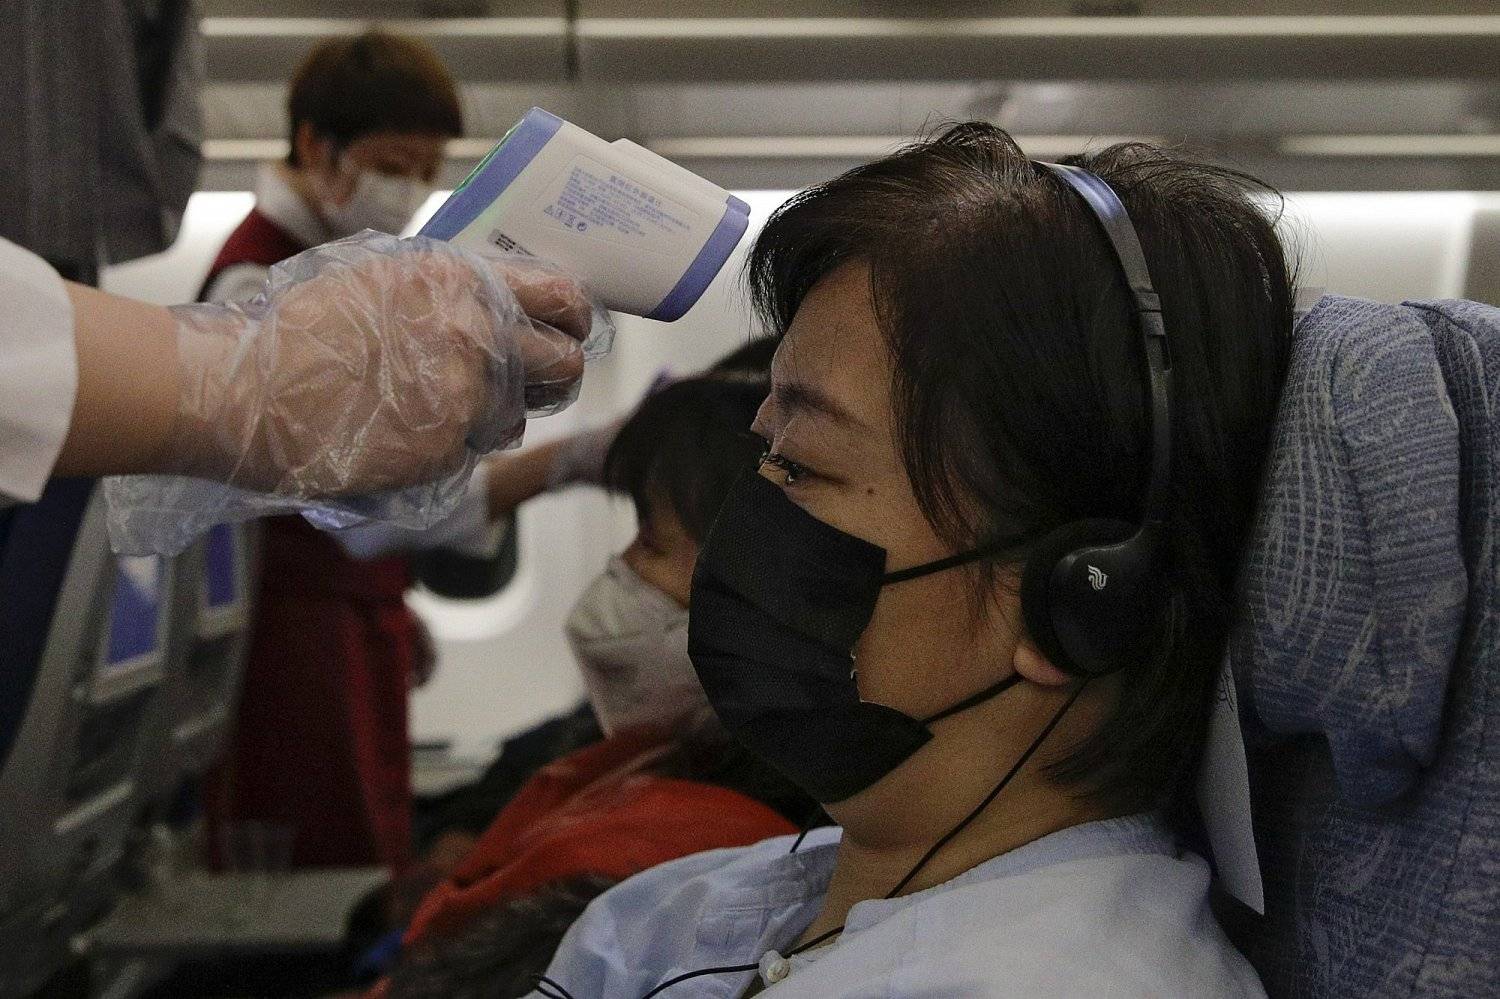 Путешествие в корею во время пандемии - корея и мир